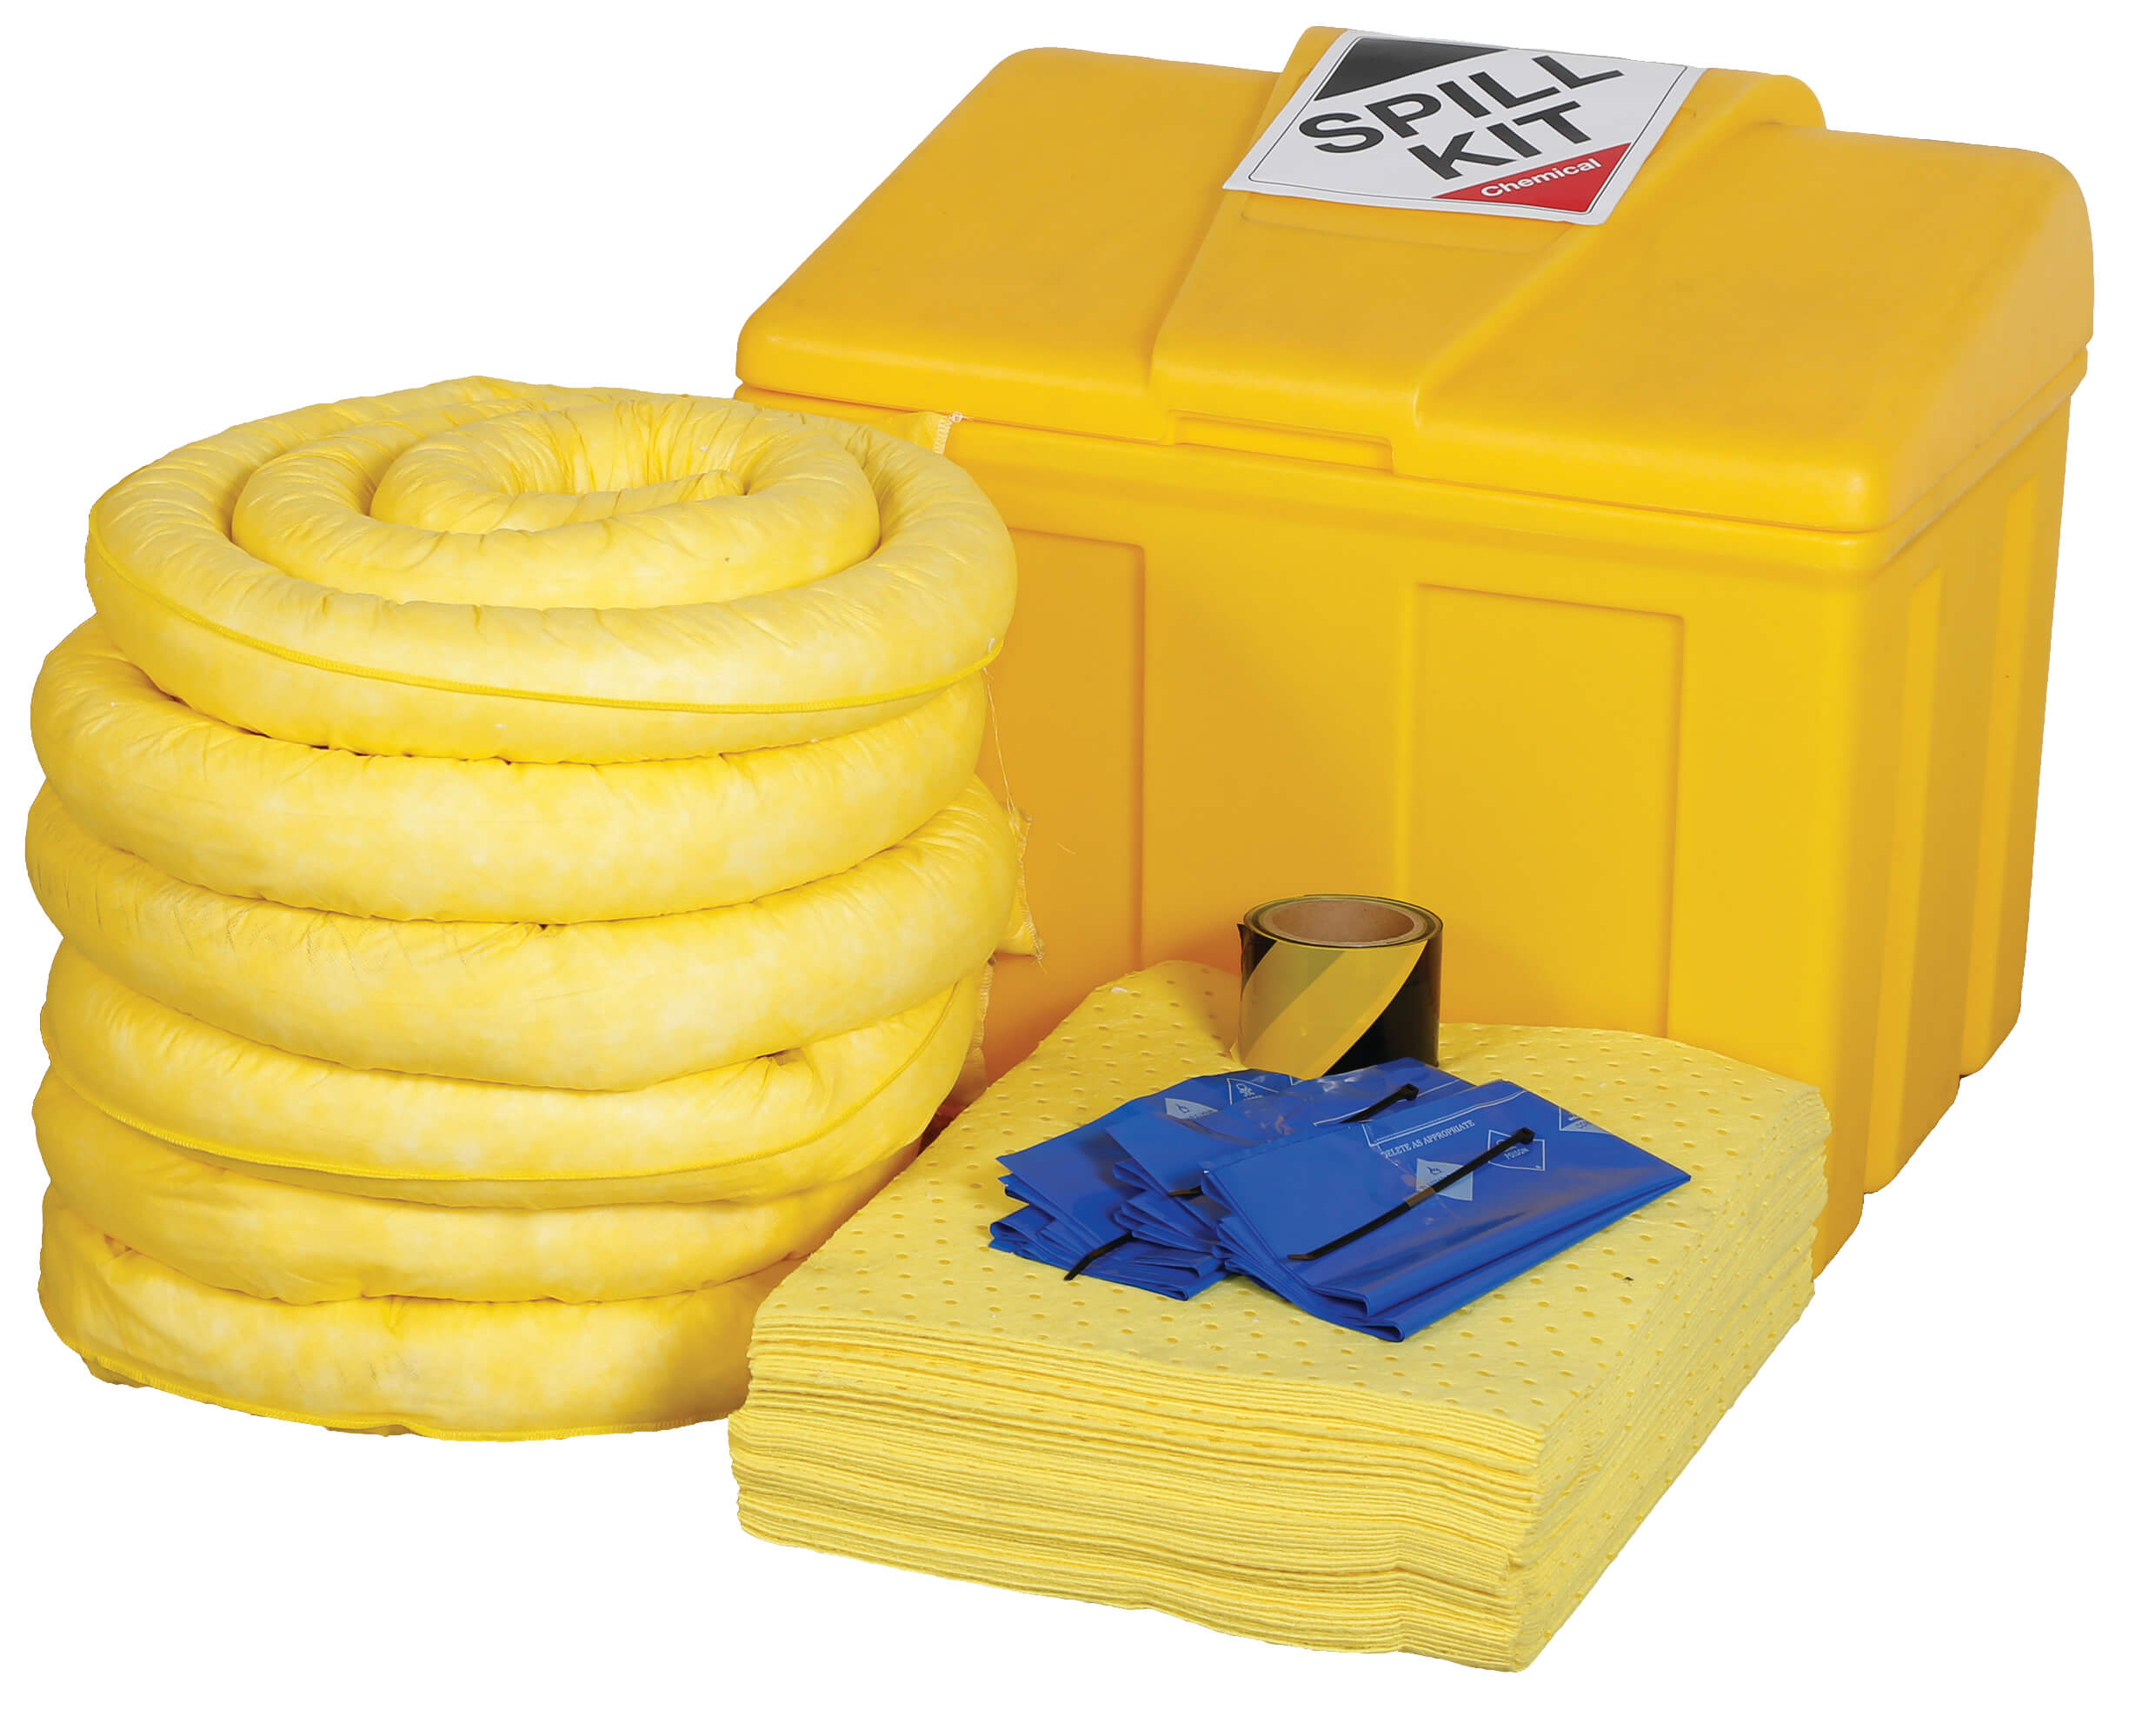 Chemical Spill Kit in Locker